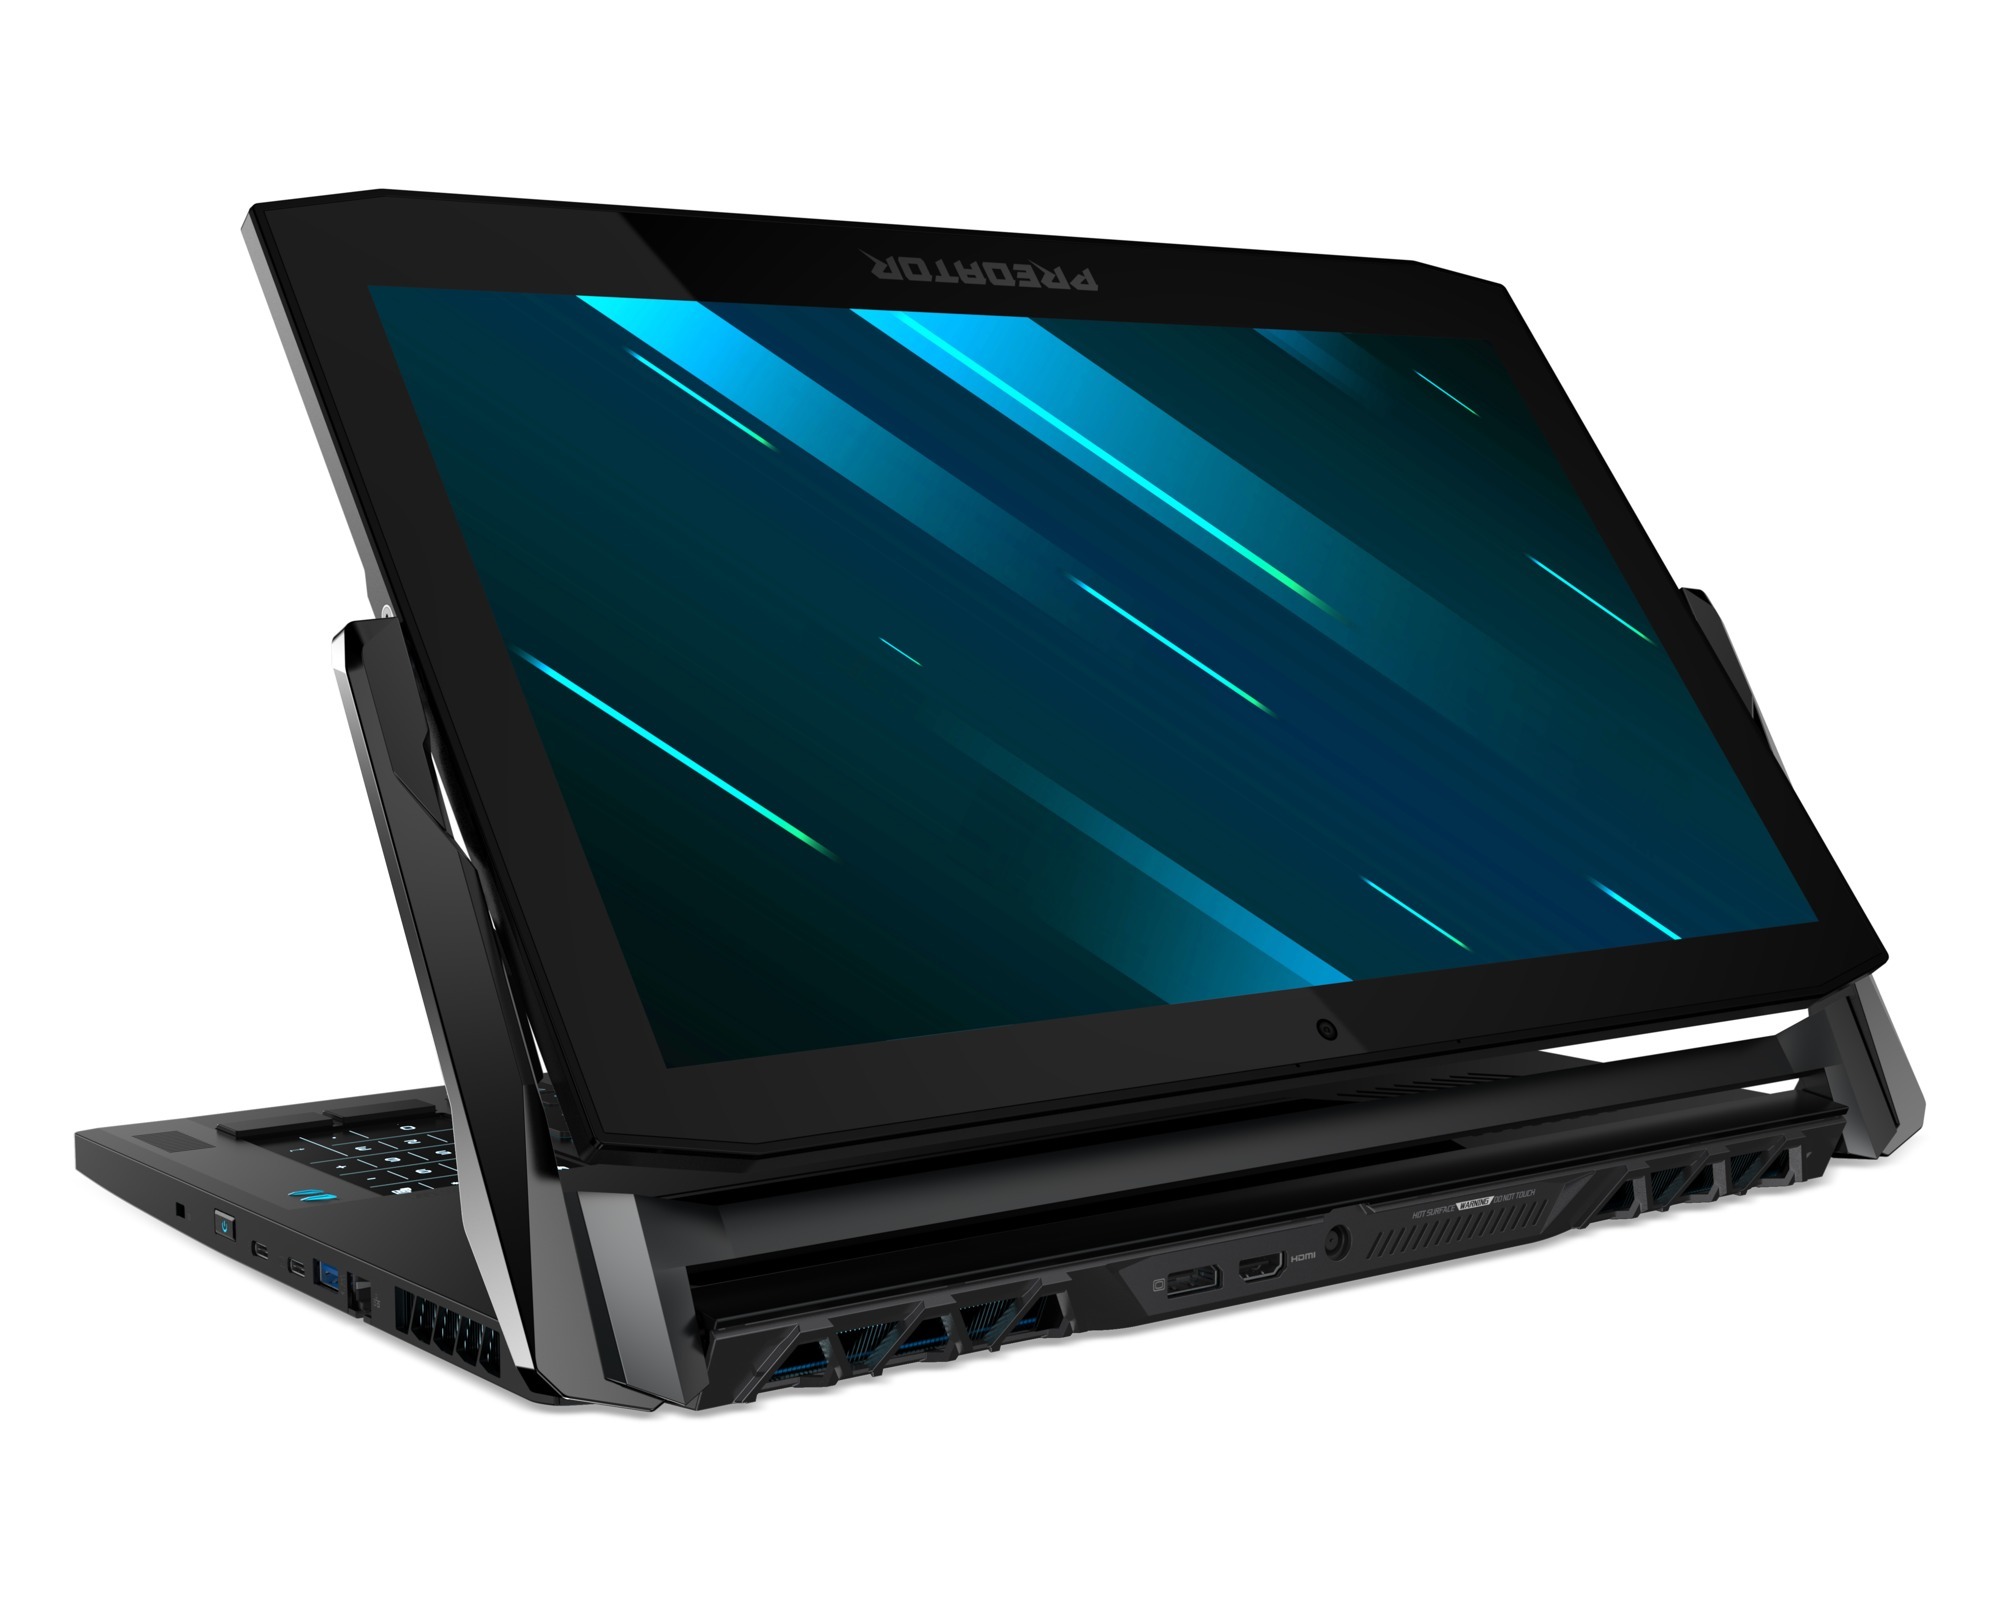 İlginç standıyla Acer Predator Triton 900 oyuncu bilgisayarı duyuruldu